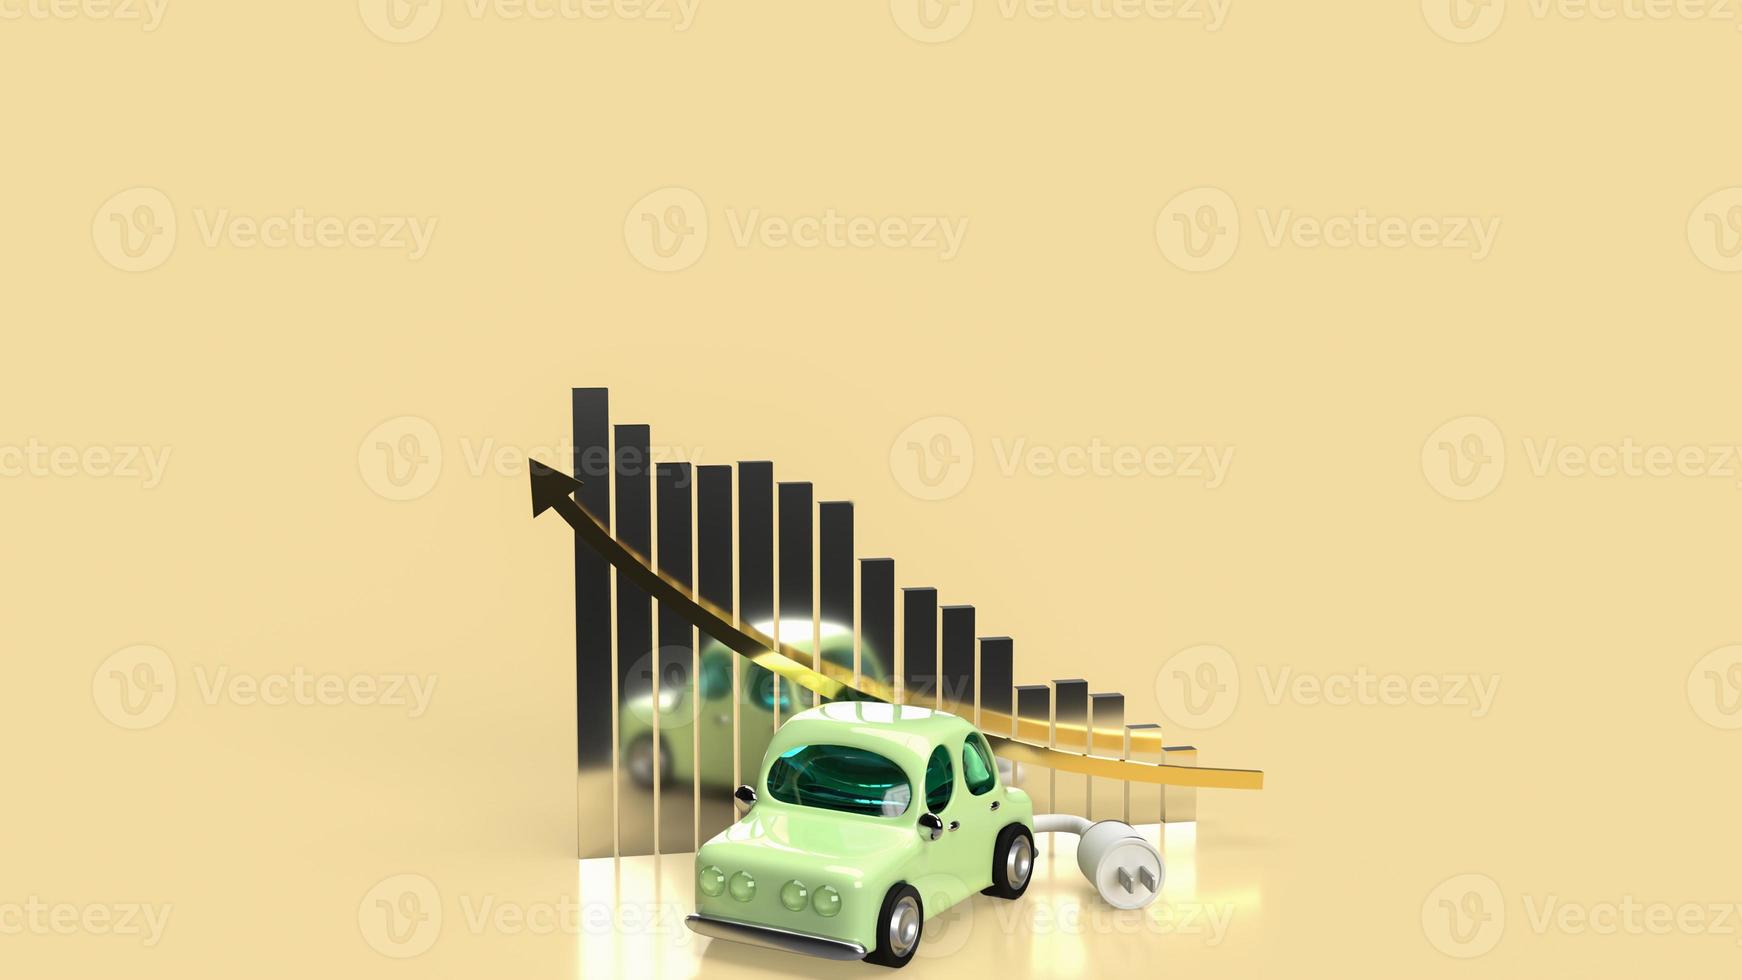 el automóvil y el enchufe eléctrico en el negocio gráfico para la representación 3d del sistema ecológico o de automóviles foto